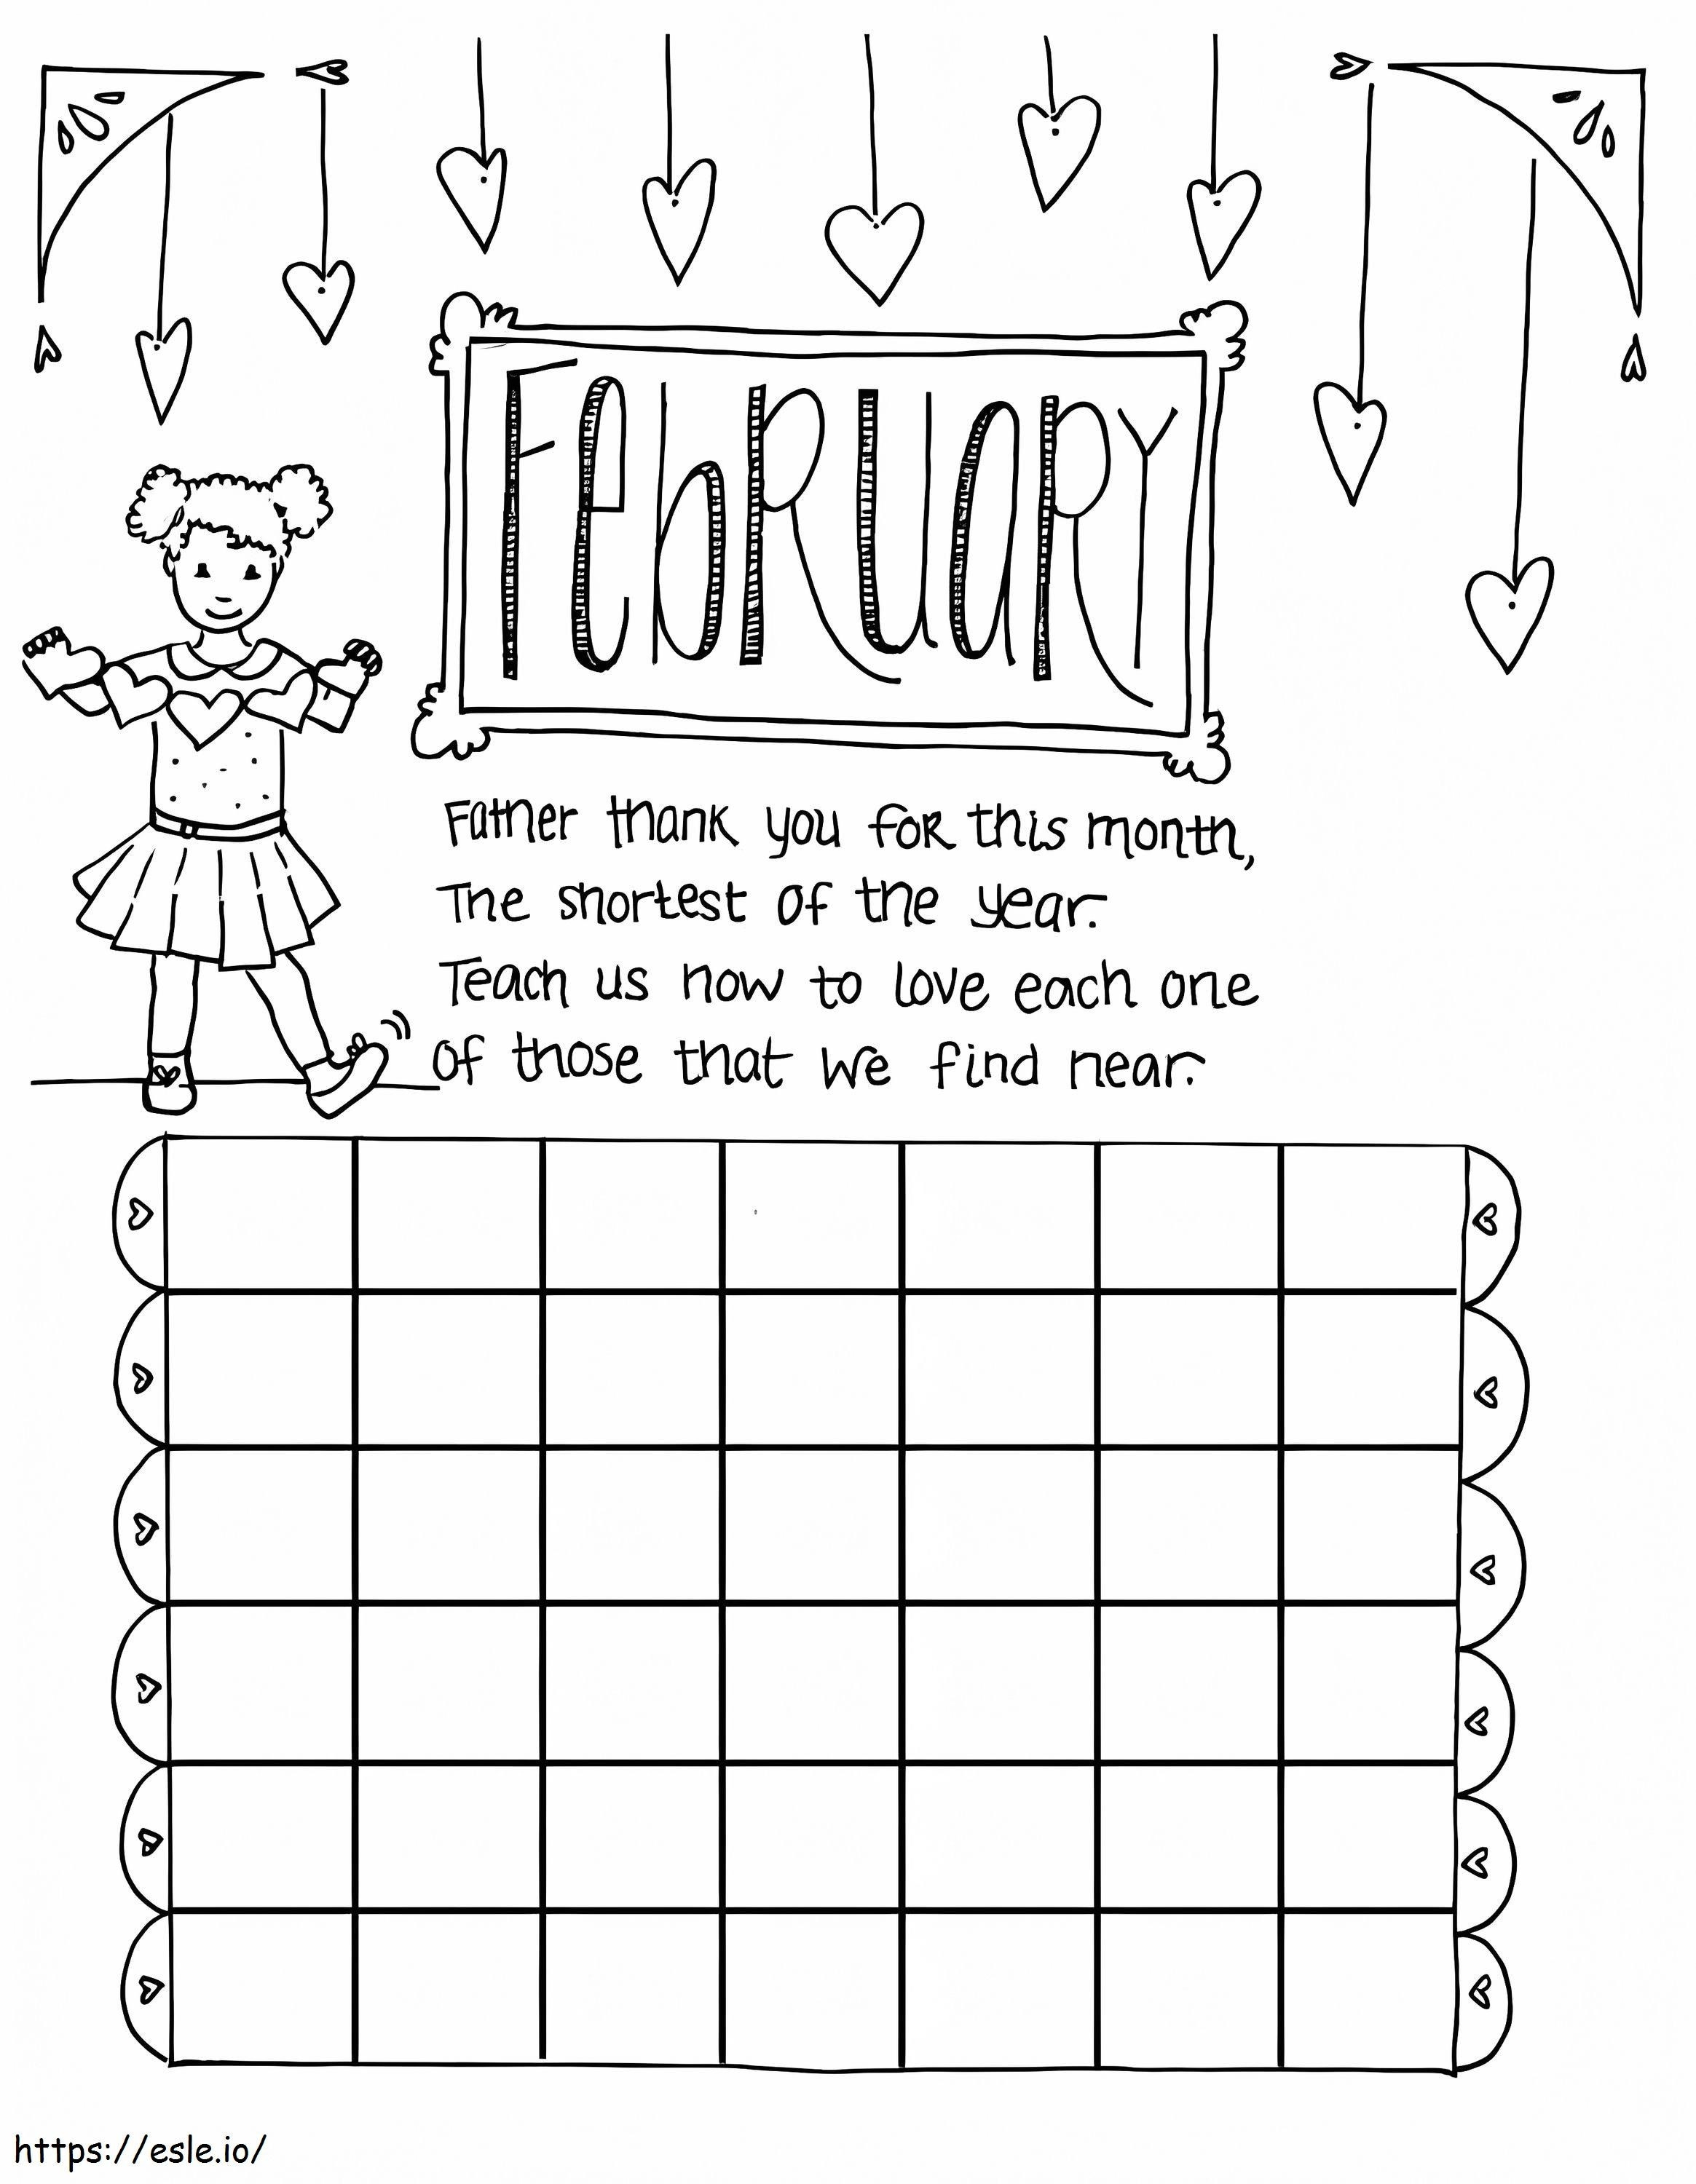 Página para colorear de febrero del calendario infantil para colorear